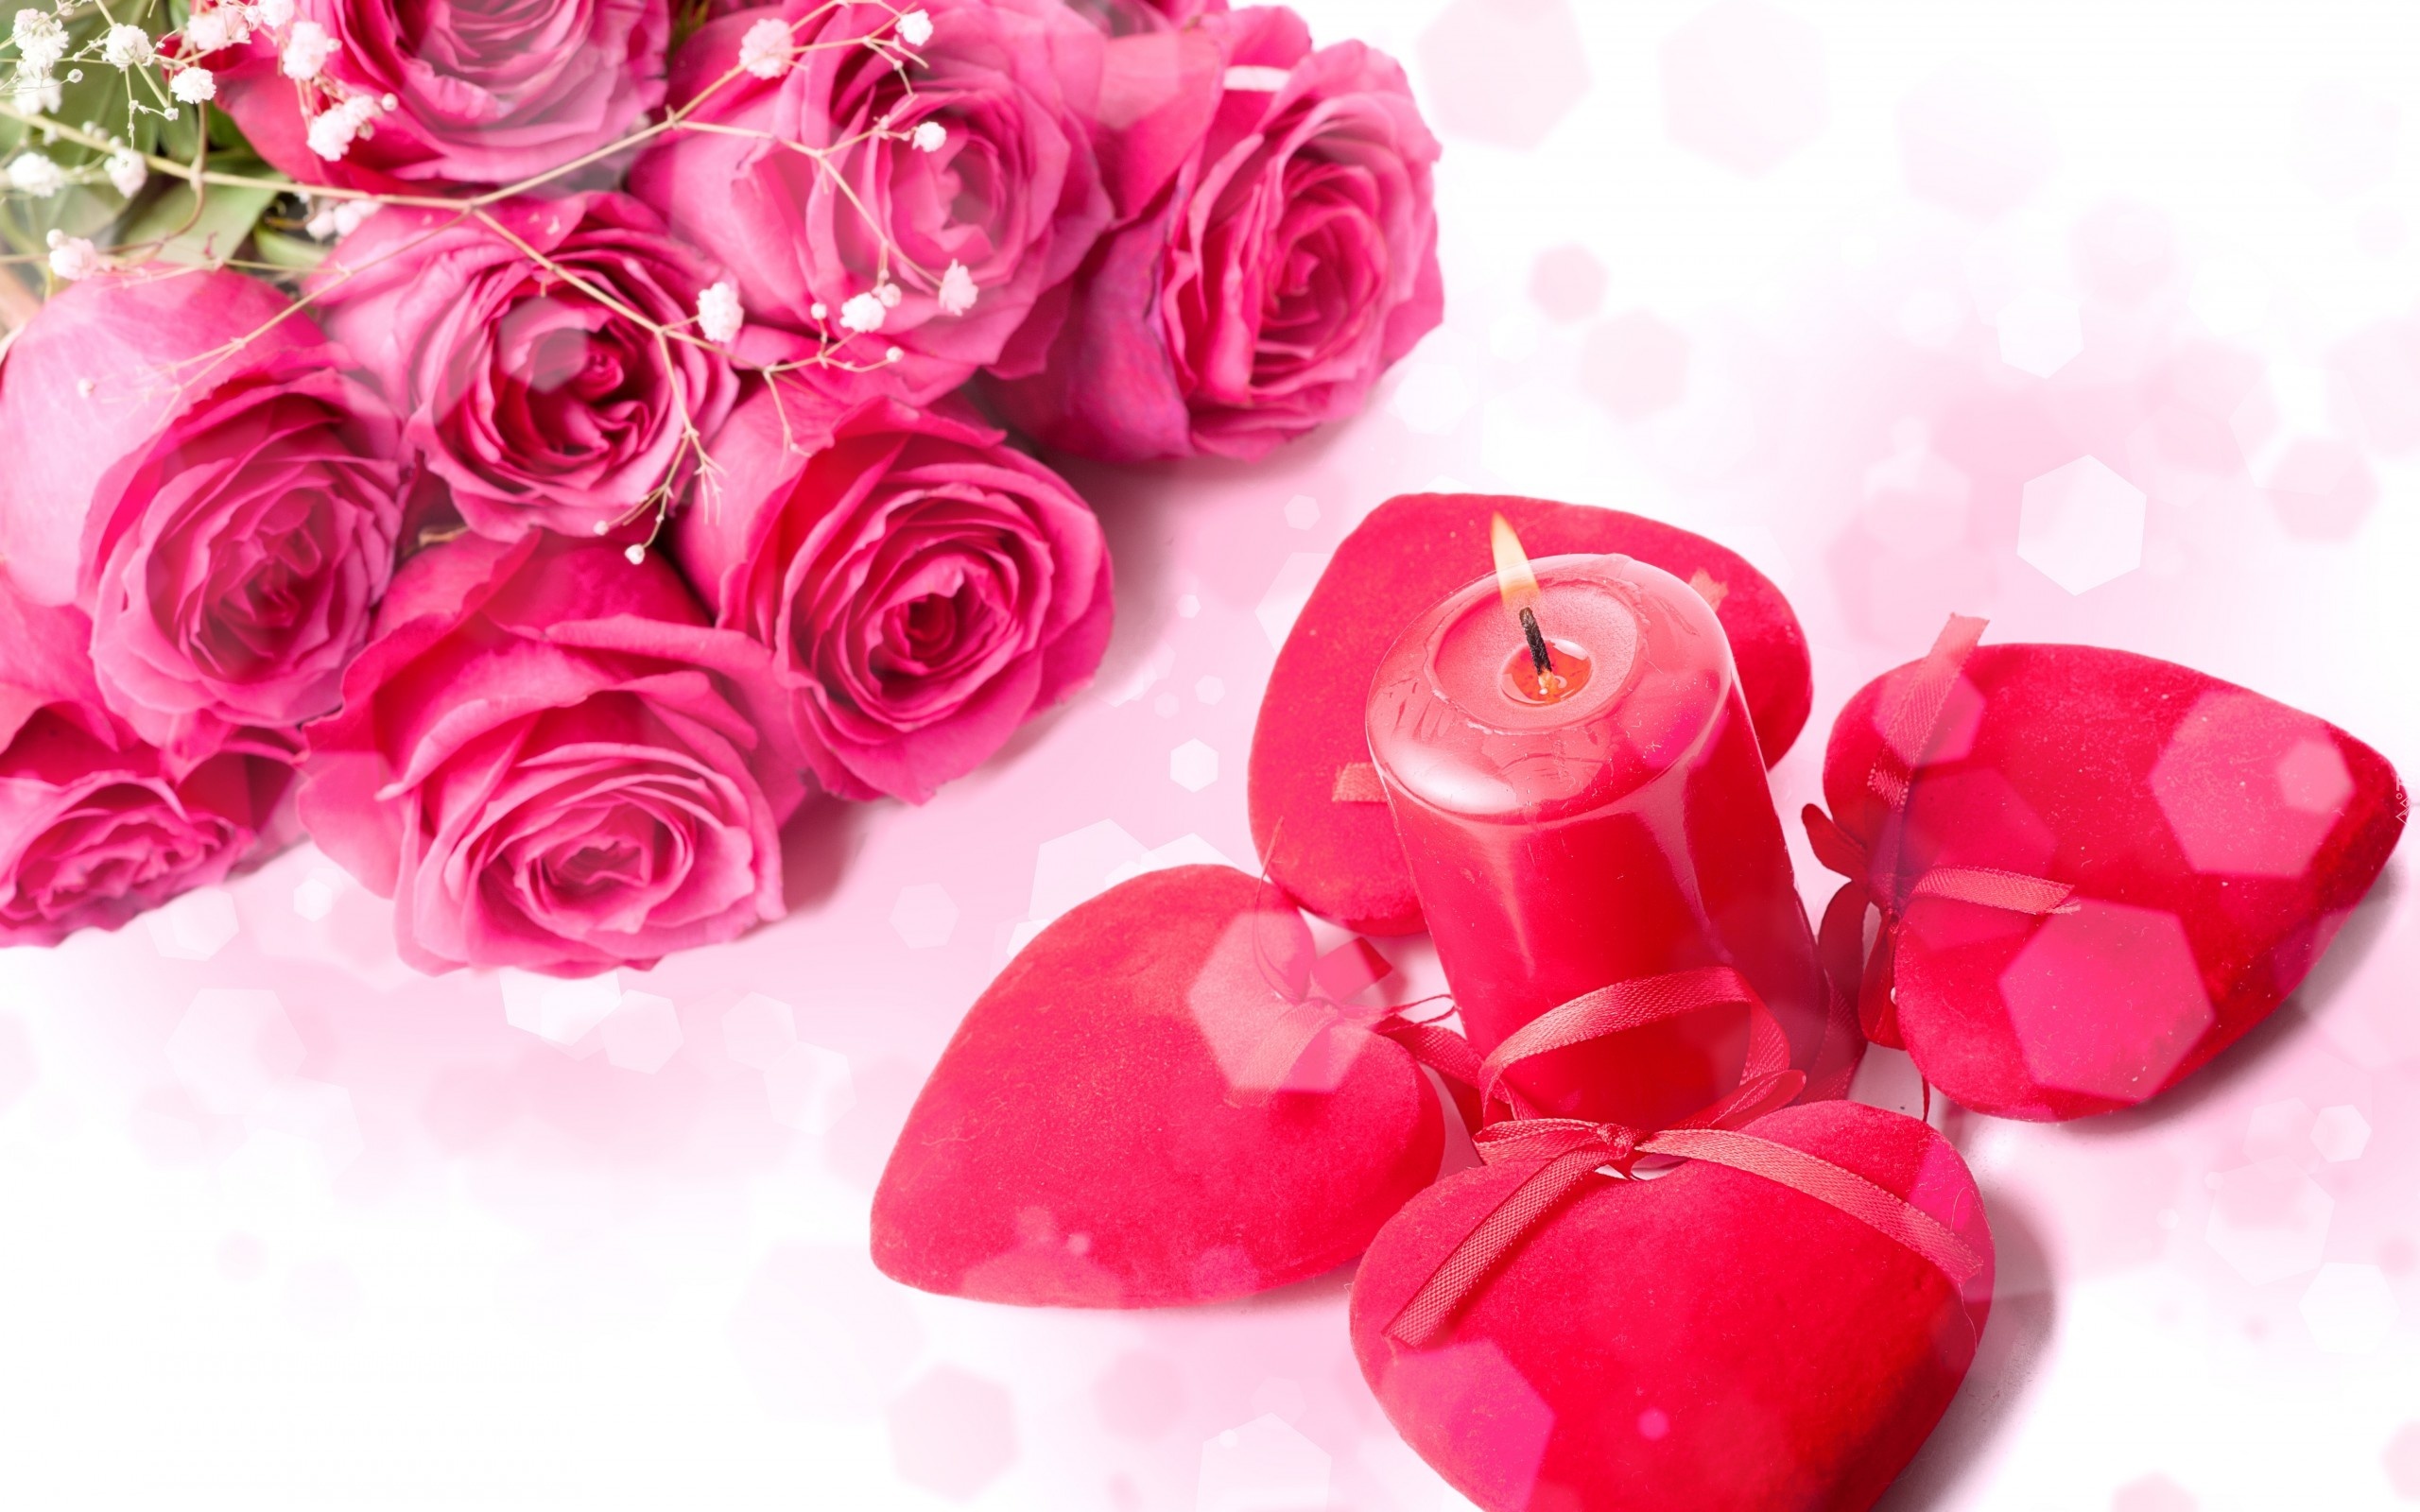 Walentynki, Róże, Świeca, Romantyzm